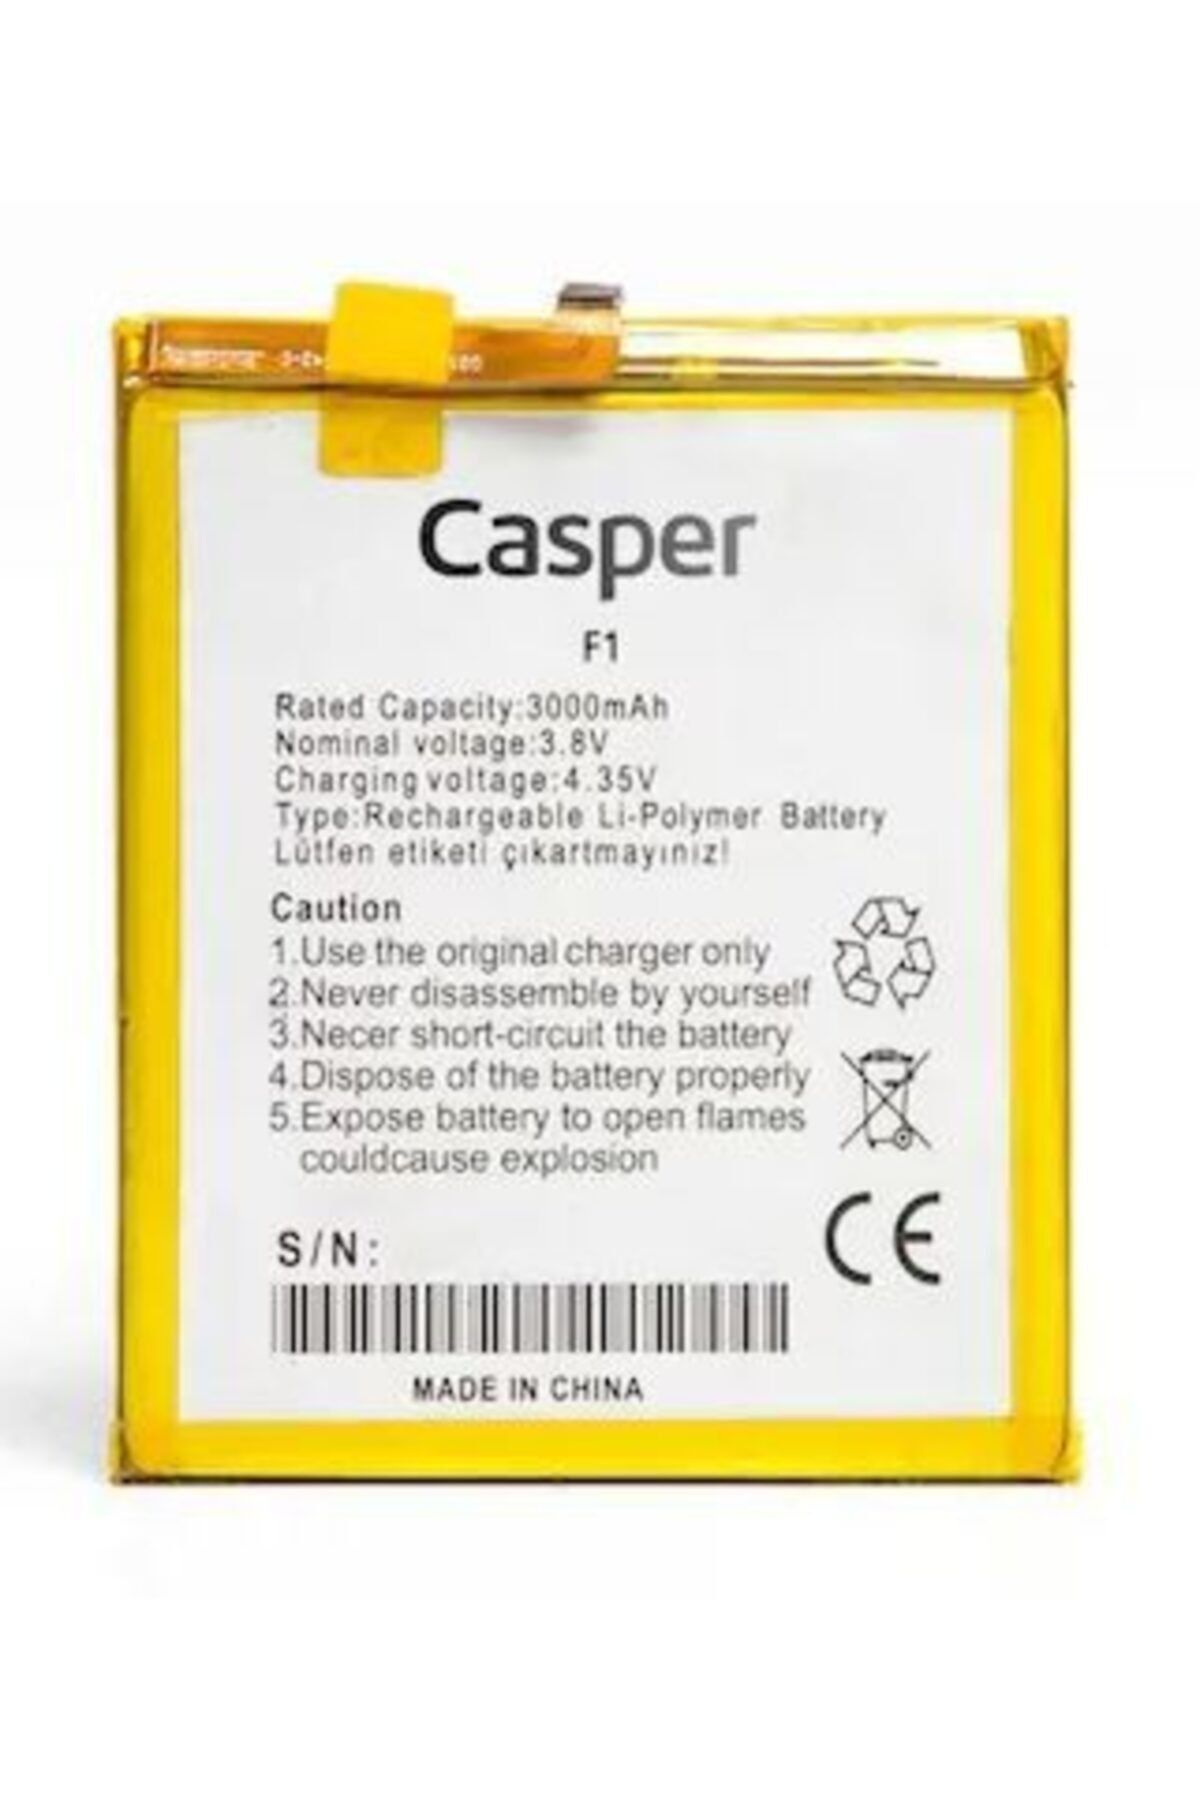 Casper Via F1 (bl-n3000e) Batarya Pil